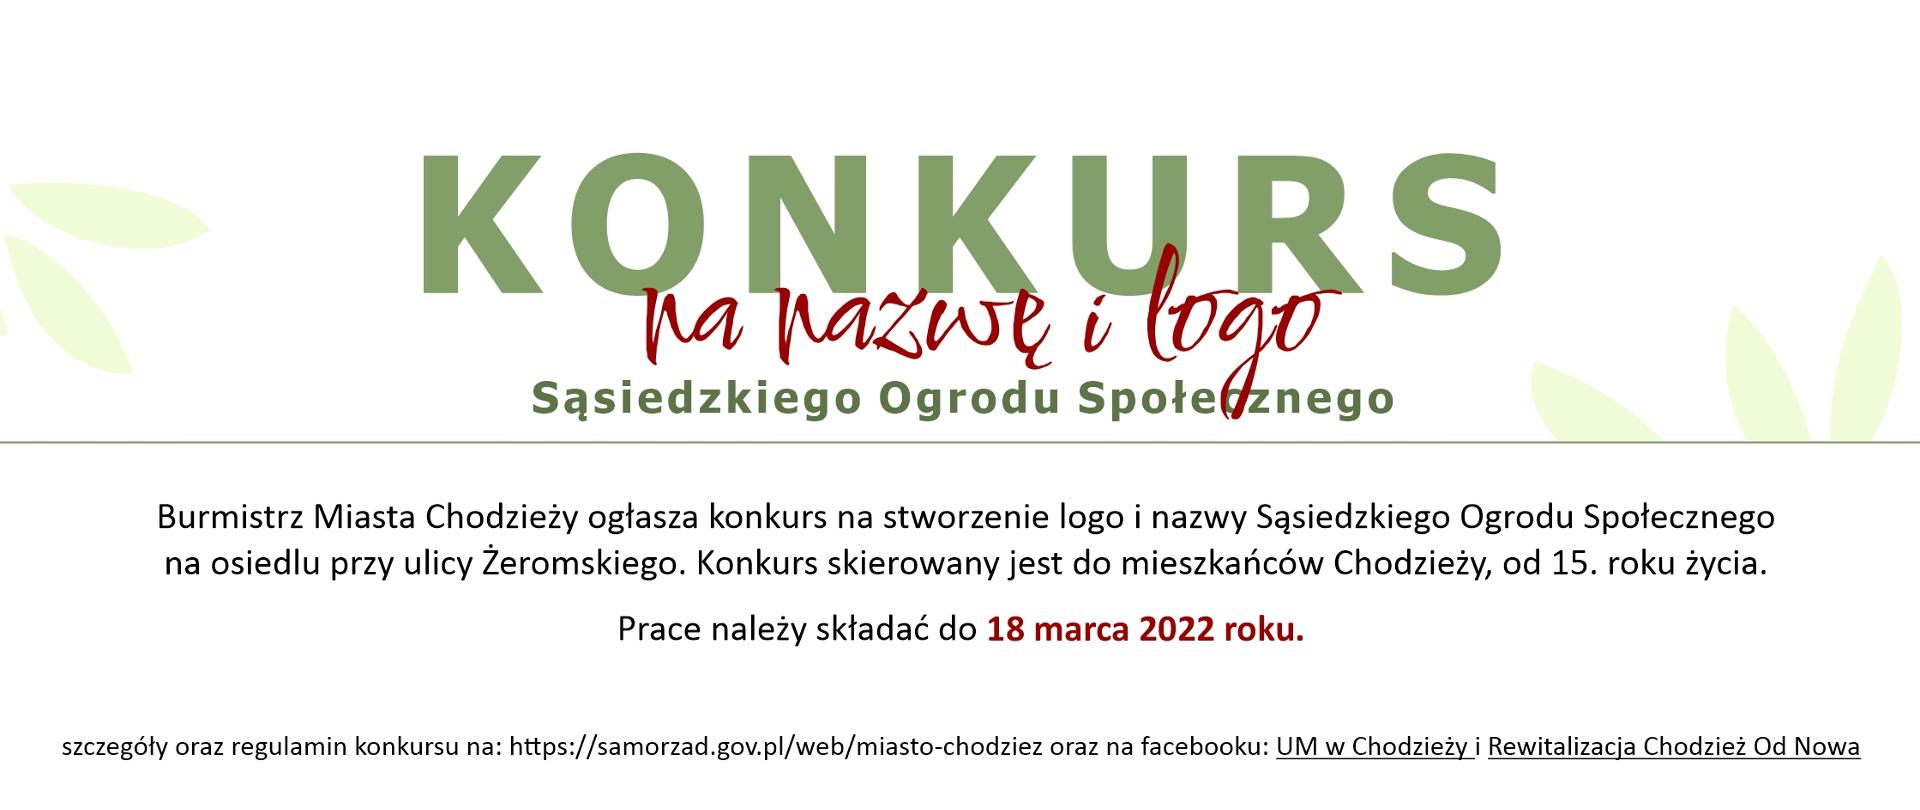 Plakat/informacja nt. konkursu na logo i nazwę Sąsiedzkiego Ogrodu Społecznego 